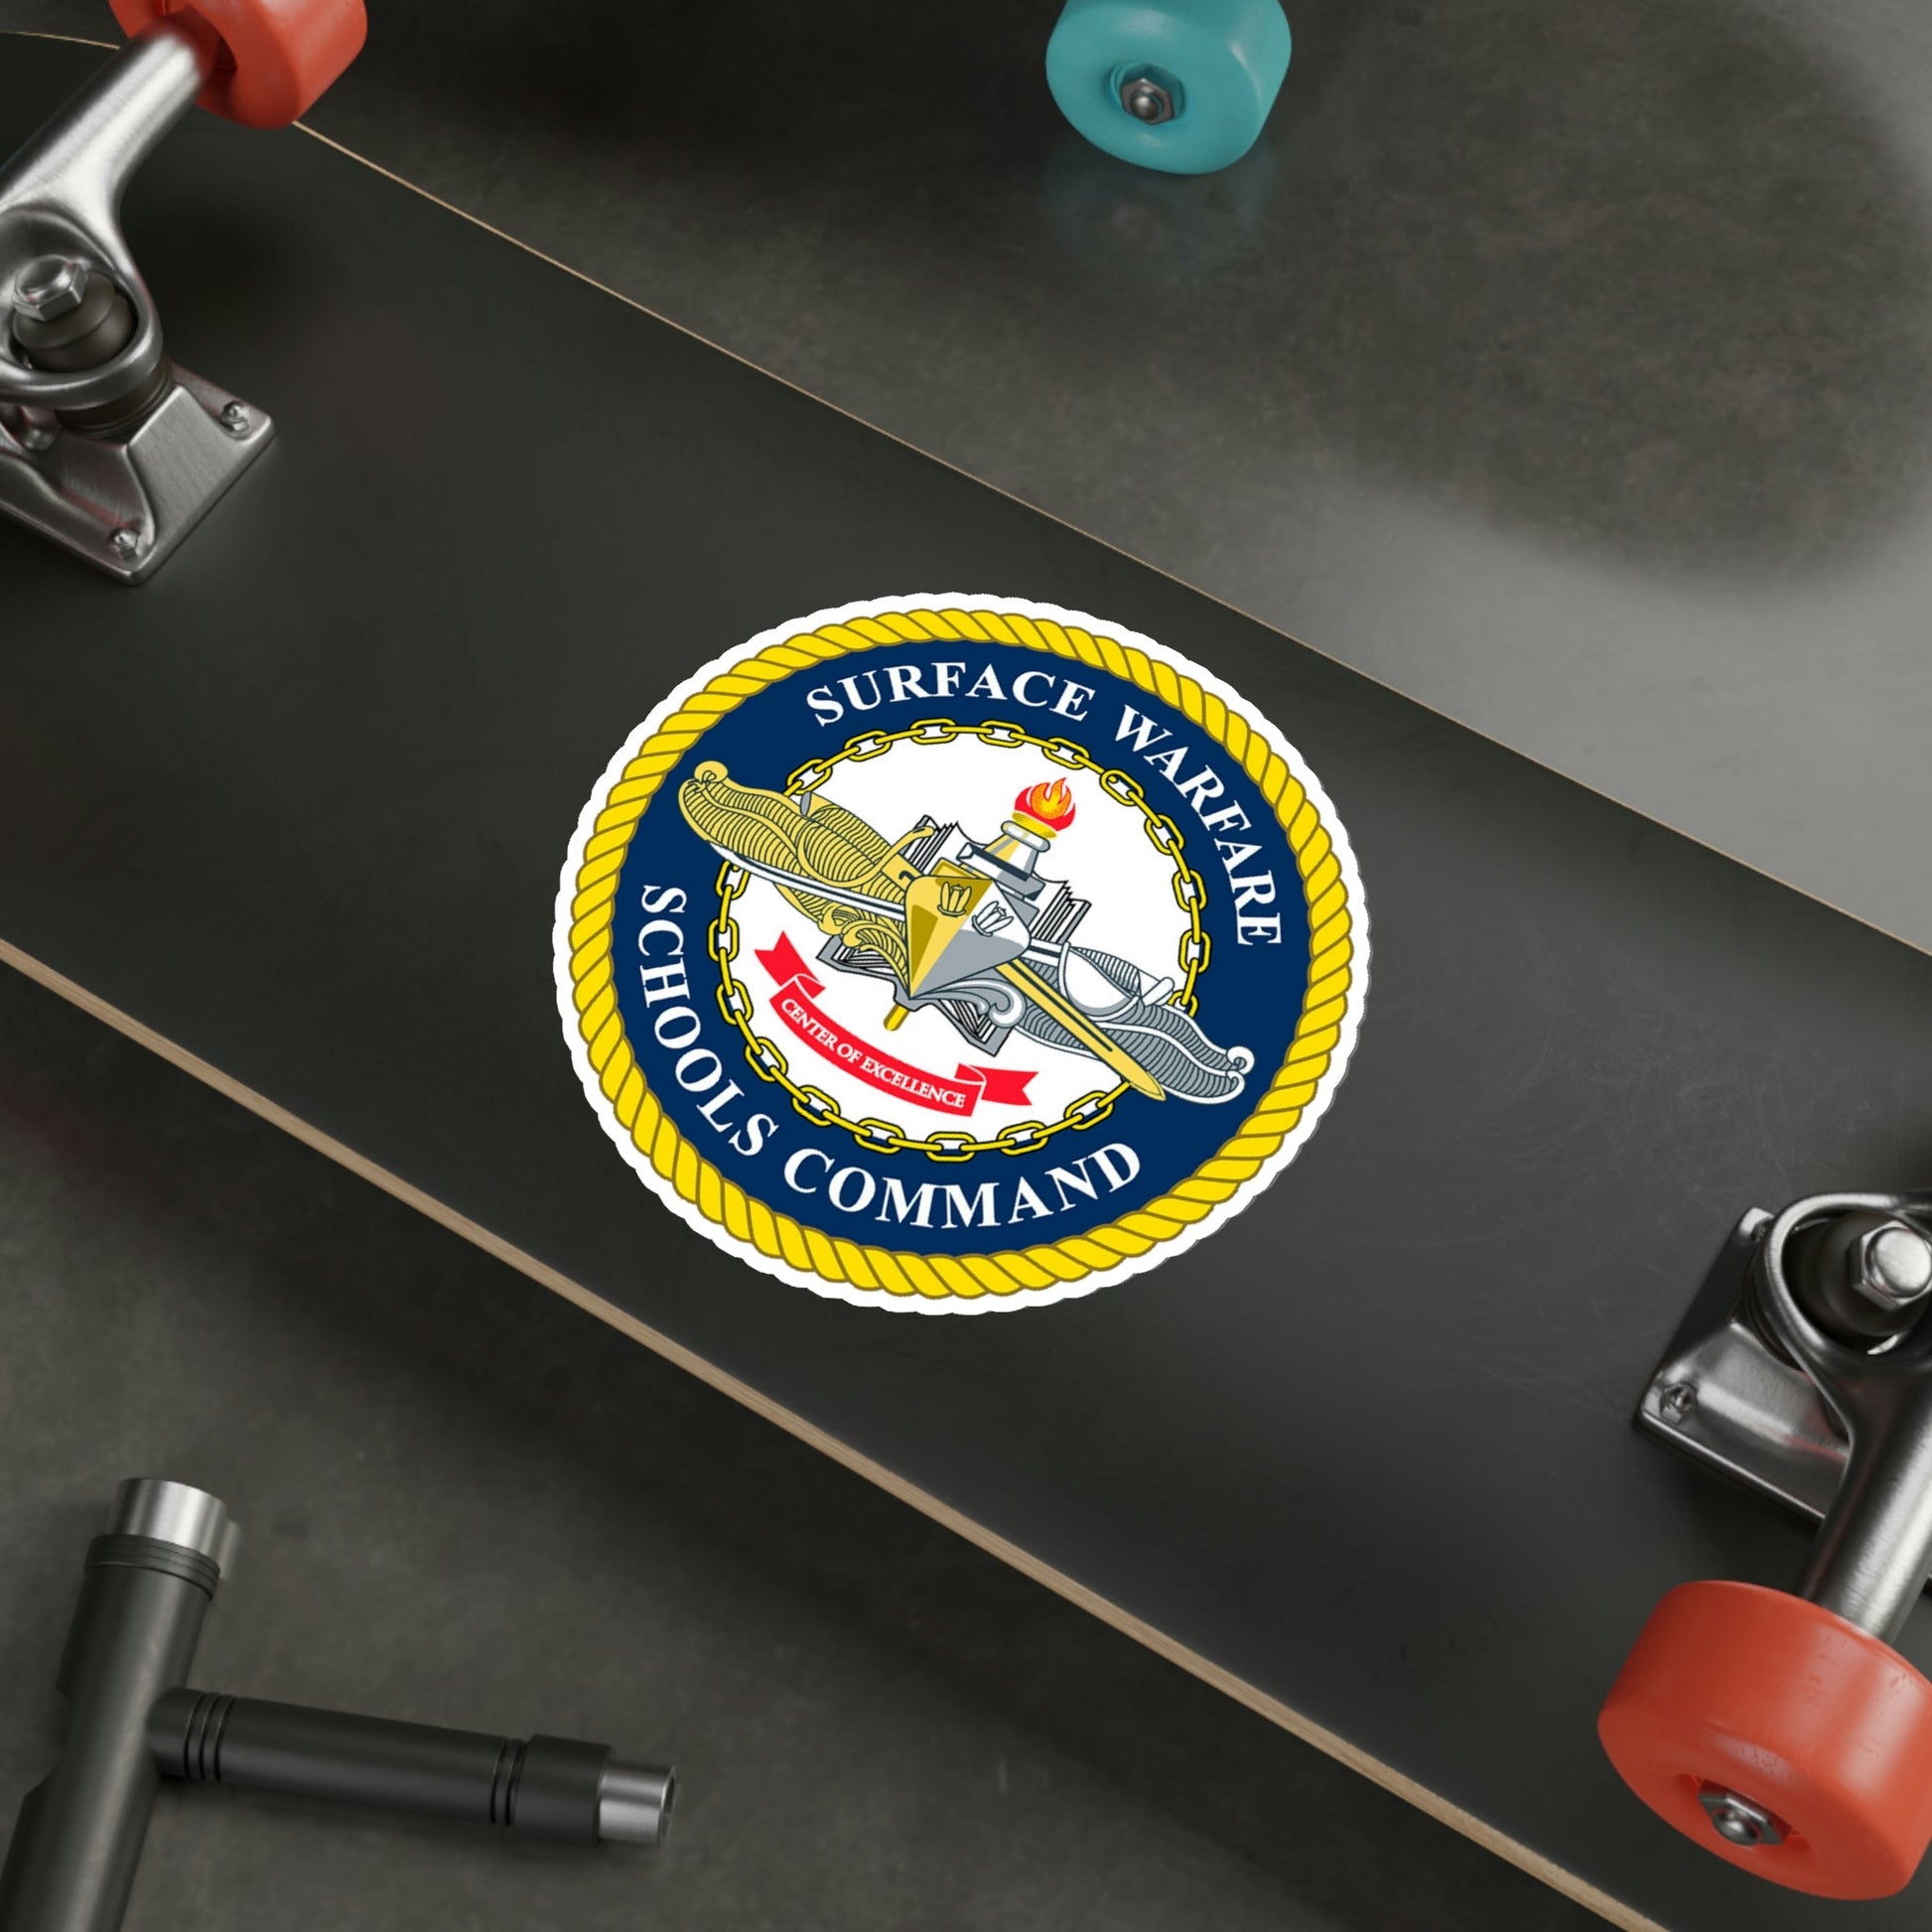 Surface Warfare Schools Command (U.S. Navy) STICKER Vinyl Die-Cut Decal-The Sticker Space